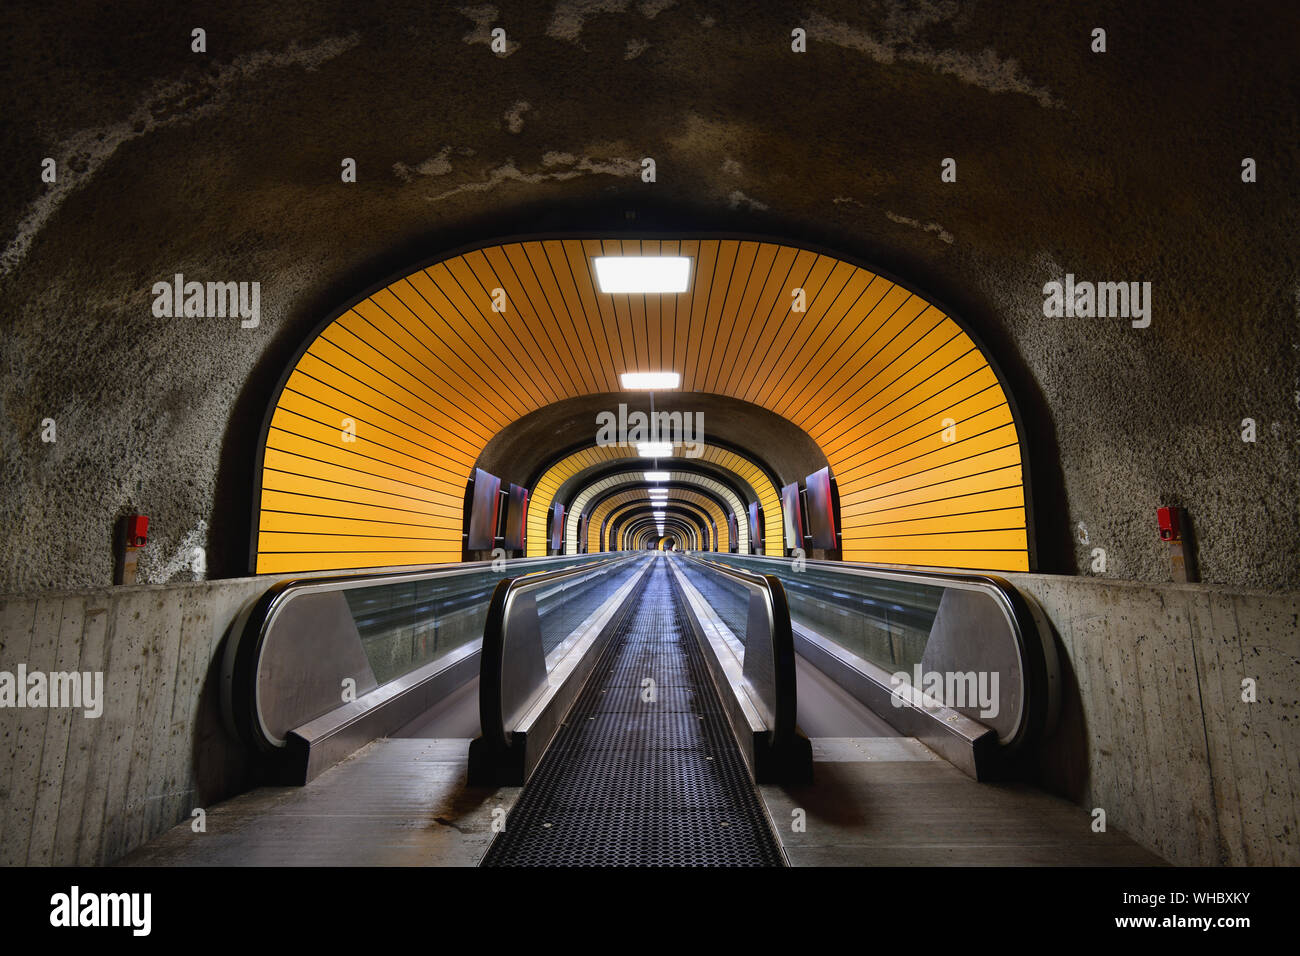 Fußgängertunnel, beleuchteten Tunnel, mit zwei Laufbänder. Stockfoto